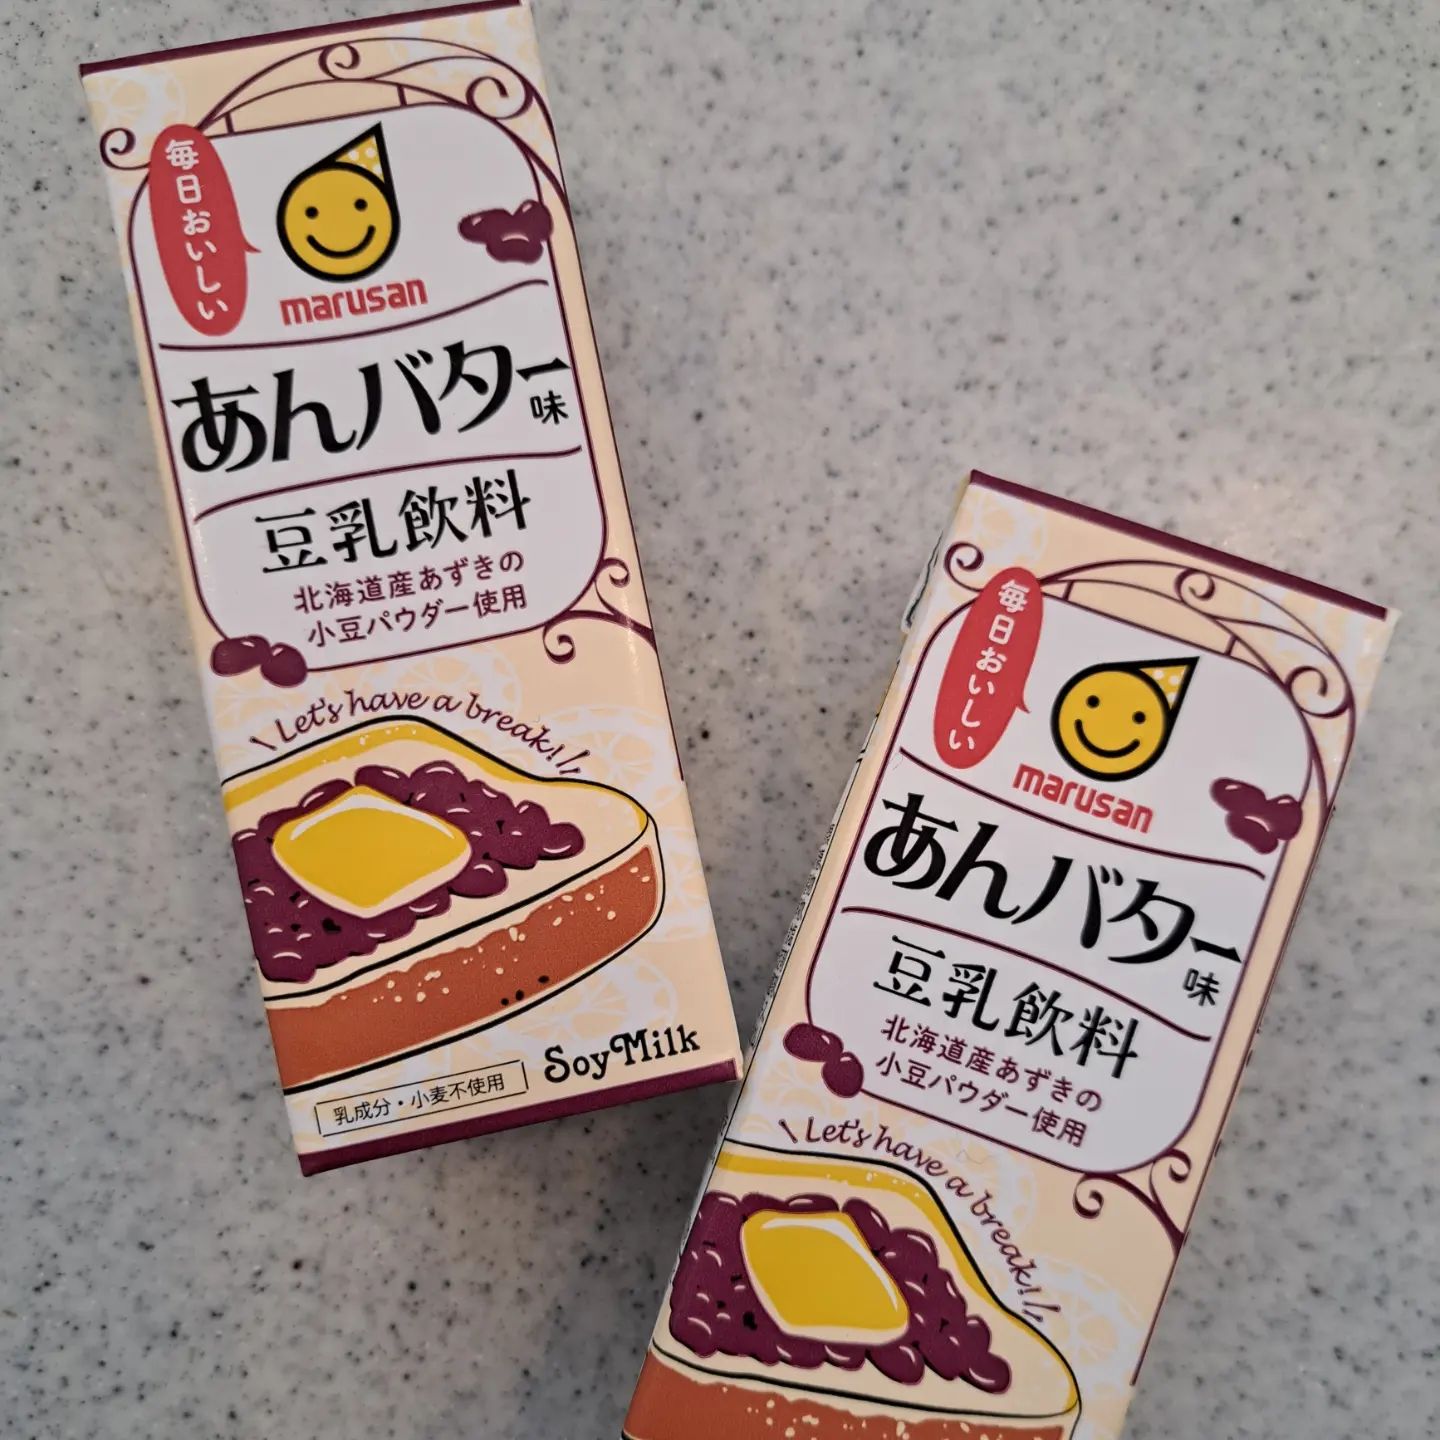 口コミ投稿：「 #豆乳飲料 #あんバター味 200ml」#マルサンアイ株式会社 さまより。#北海道産あず…